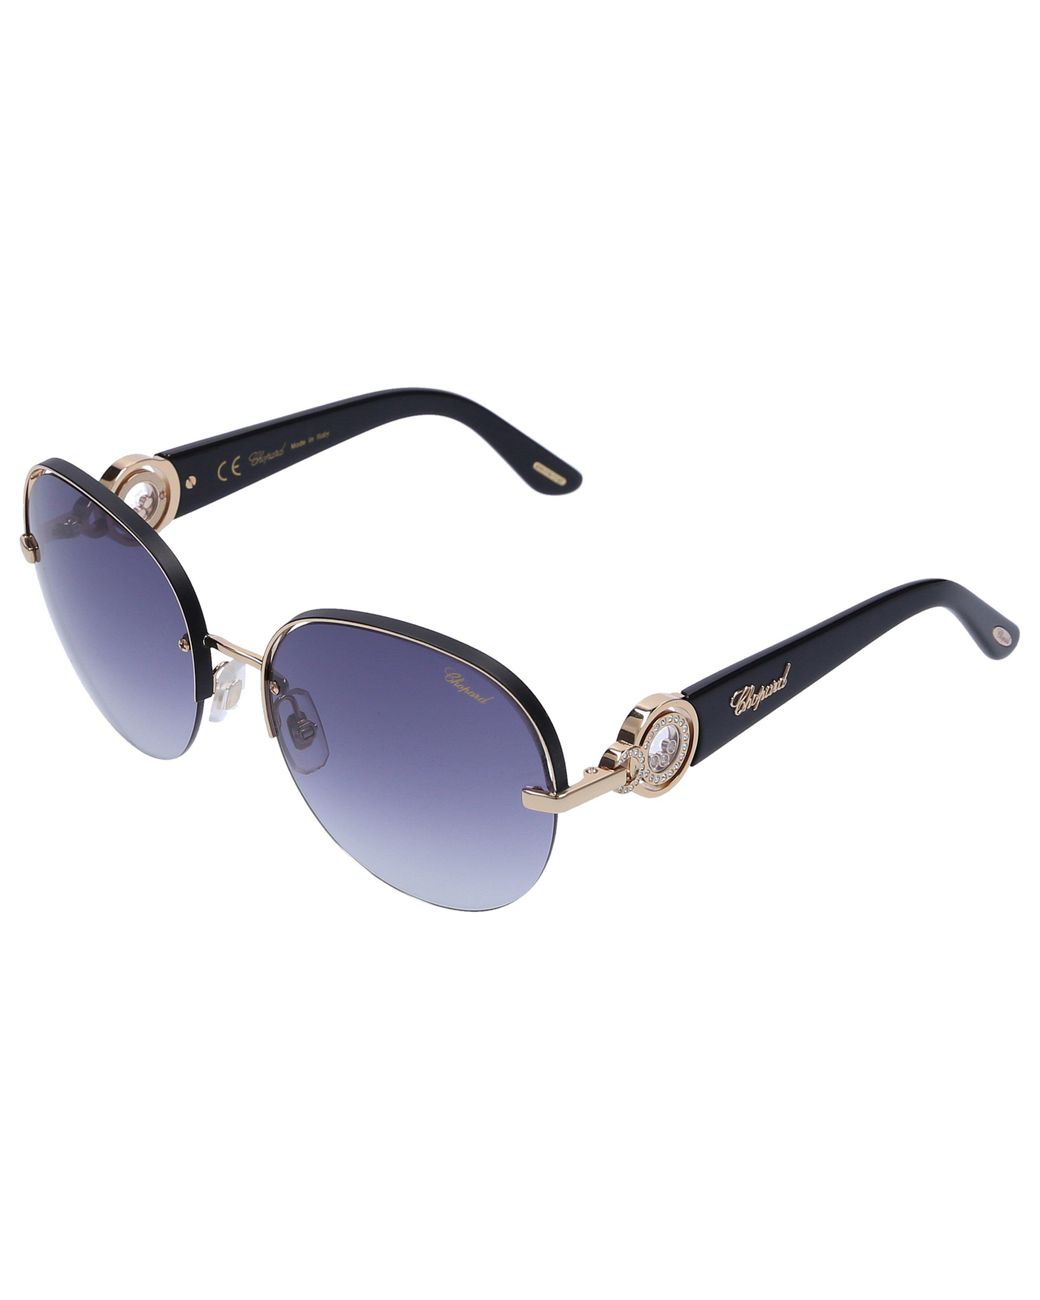 Chopard Sunglasses Round B67s 0300 Acetate Metal Gold in Blue | Lyst